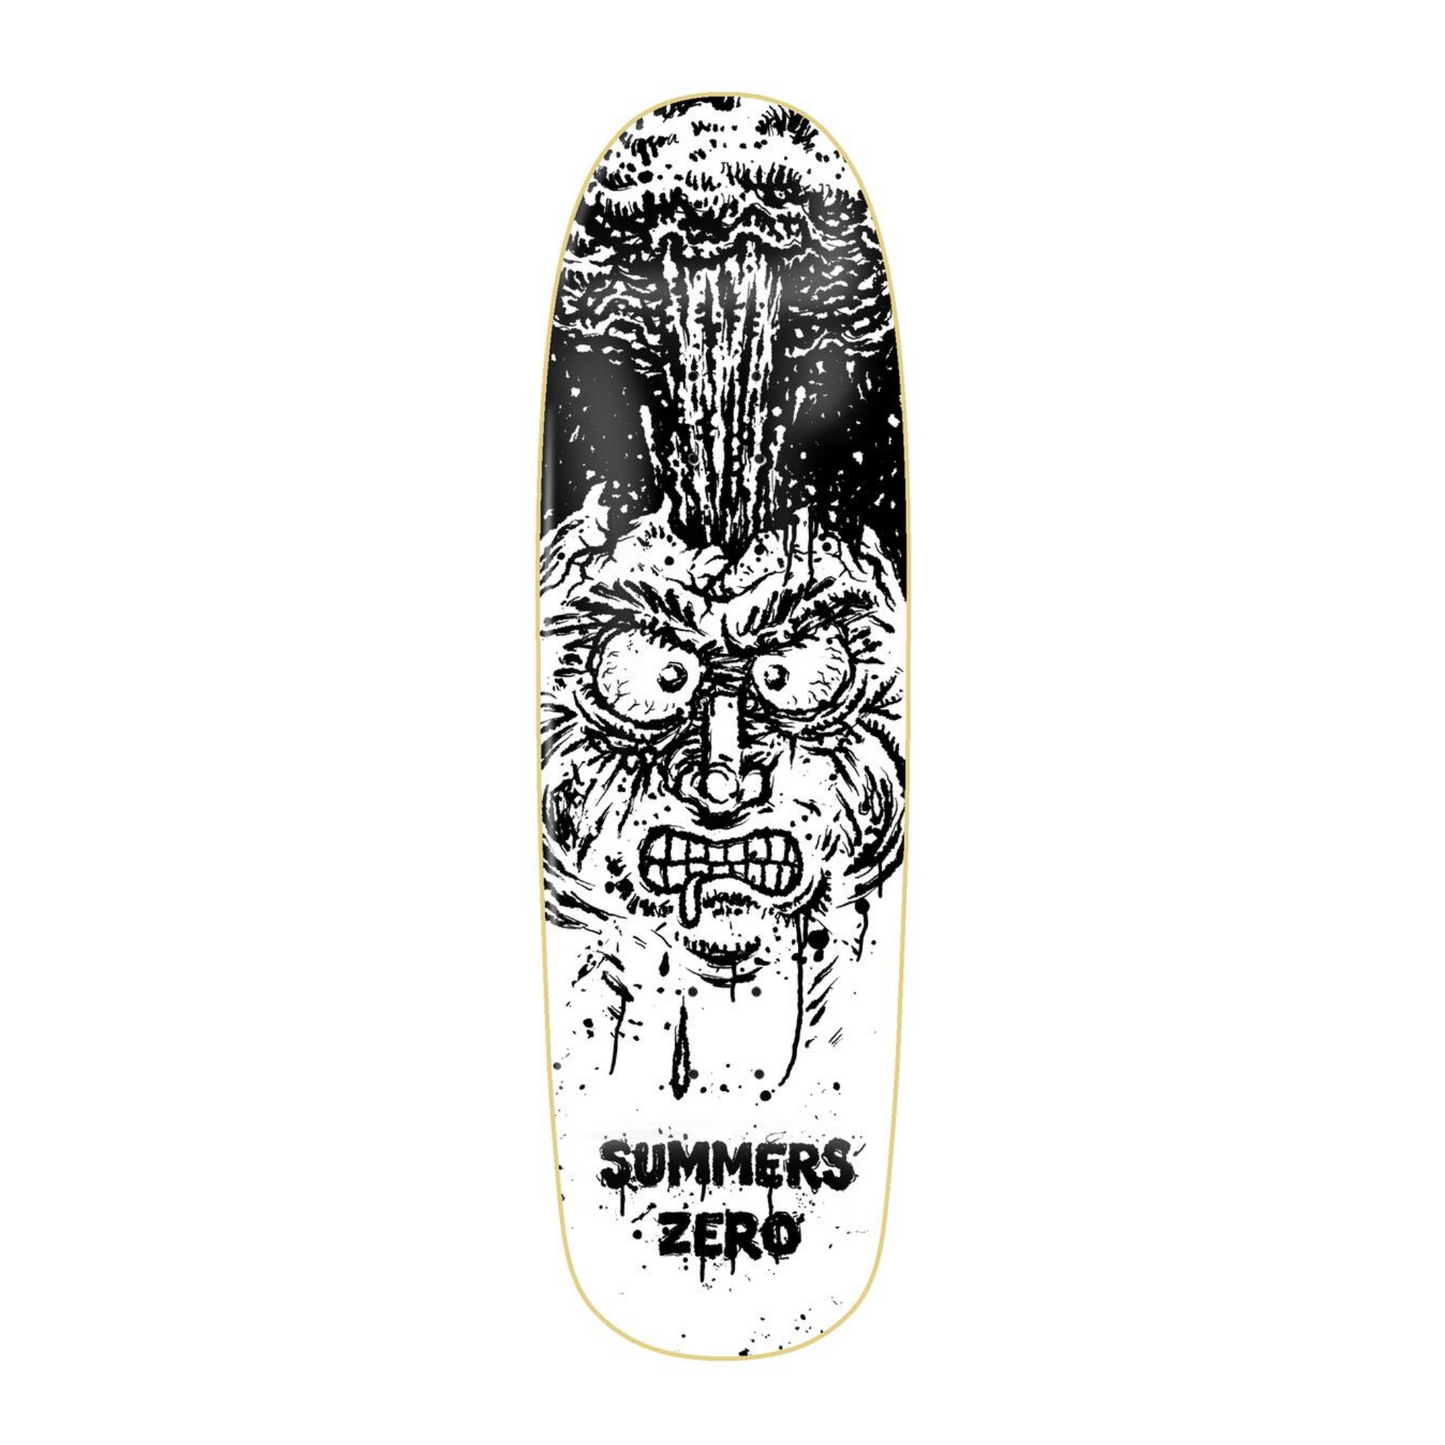 Meltdown Summers Zero Skateboards Shaped Skateboard Deck -